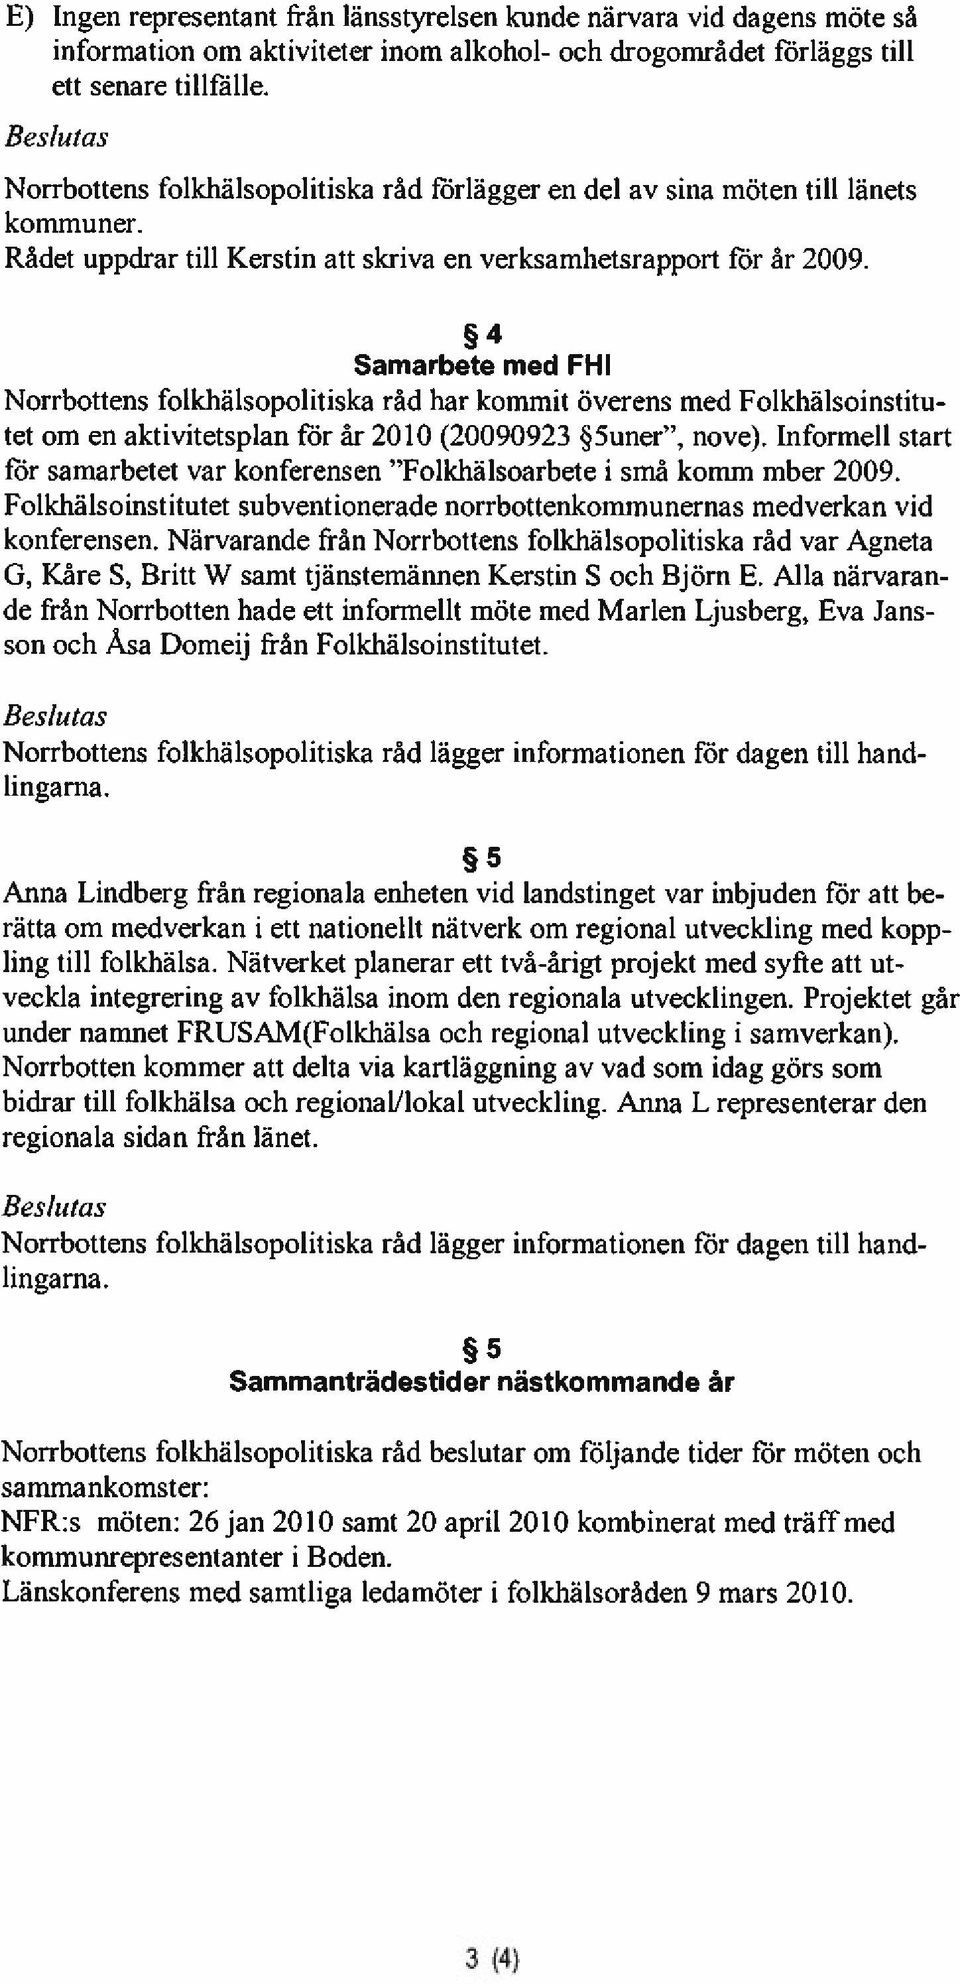 4 Samarbete med FHI Norrbottens folkhälsopolitiska råd har kommit överens med Folkhälsoinstitu tet om en aktivitetsplan för år 2010 (20090923 5uner, nove).